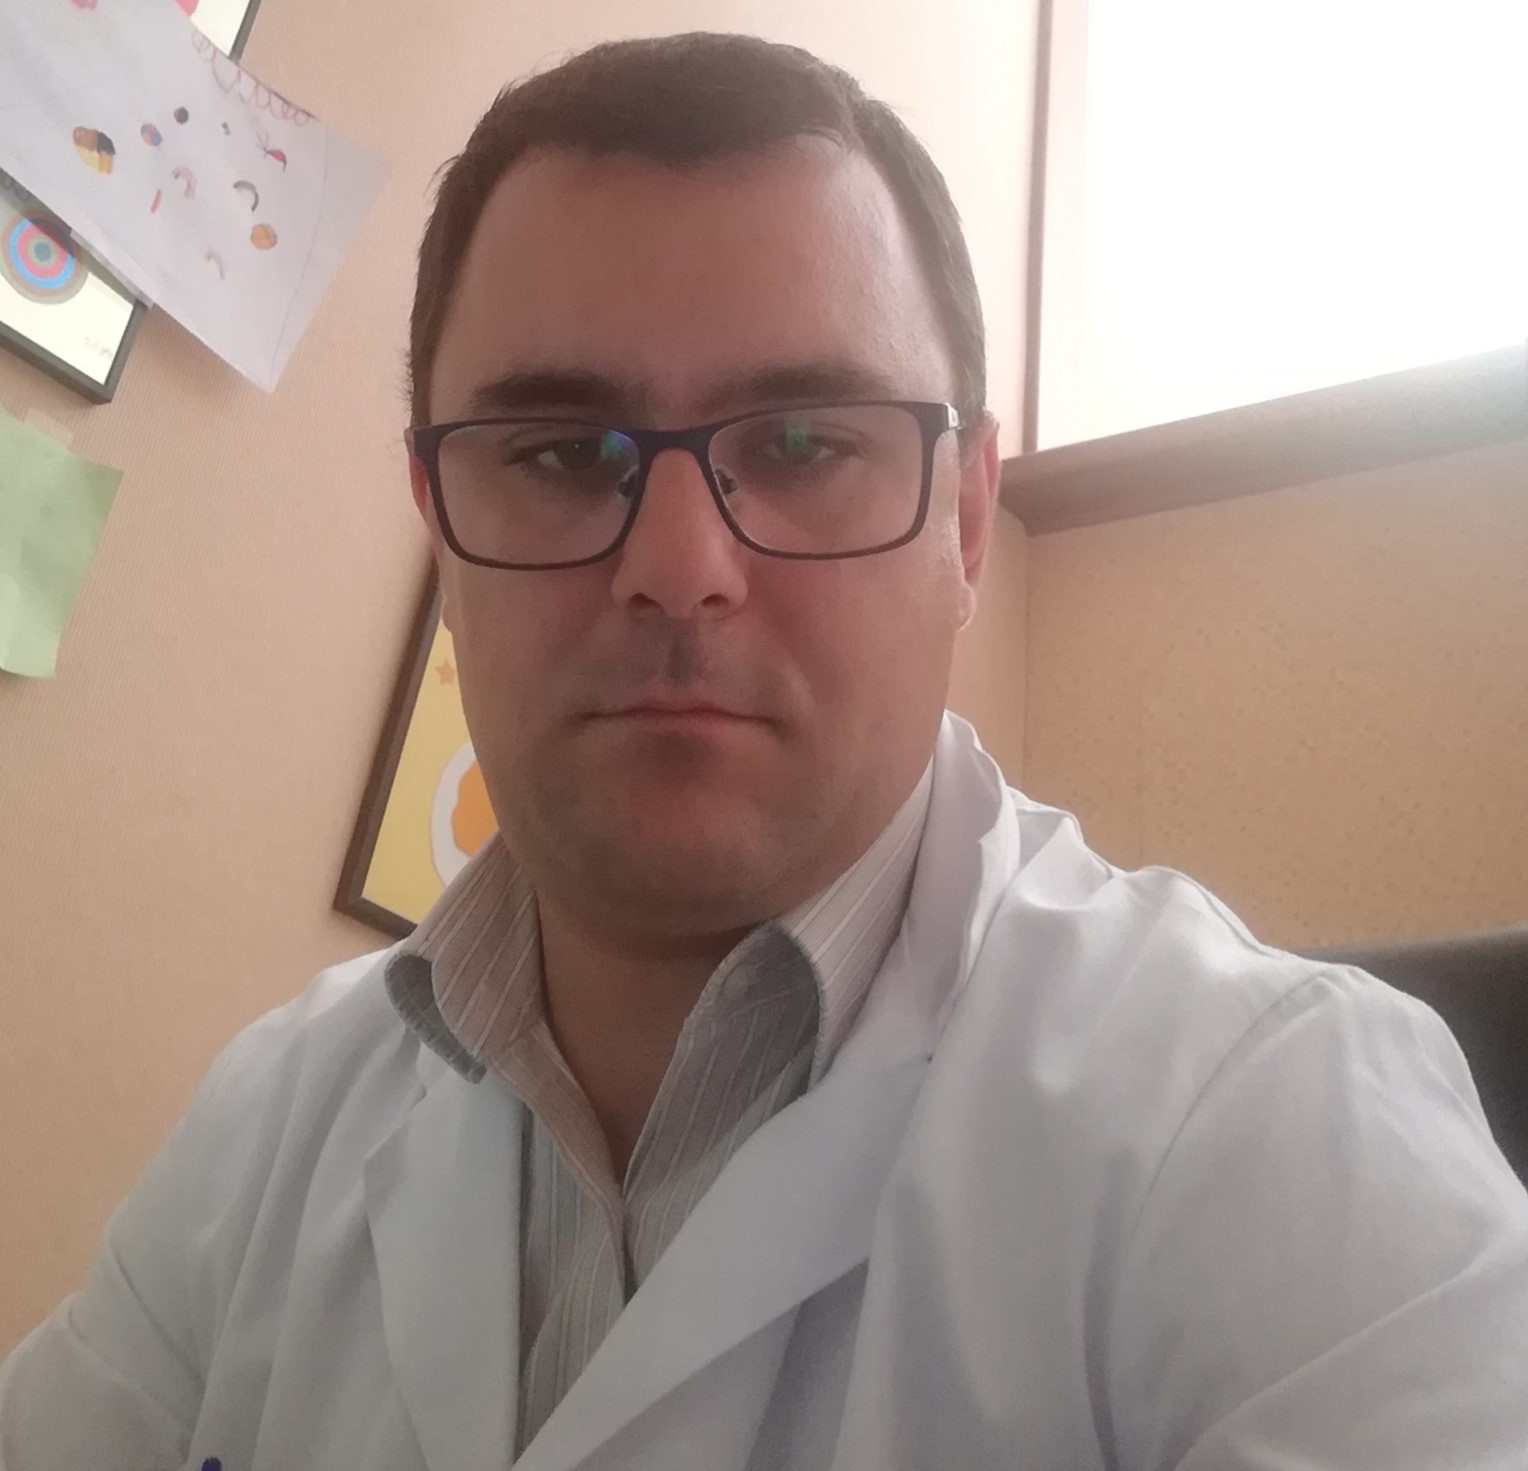 Dr. Cristian Minulescu: Pandemia nu a afectat pacienții cu boli rare, pentru că ei, oricum, aveau acces cu dificultate la resursa medicală, și înainte de pandemie